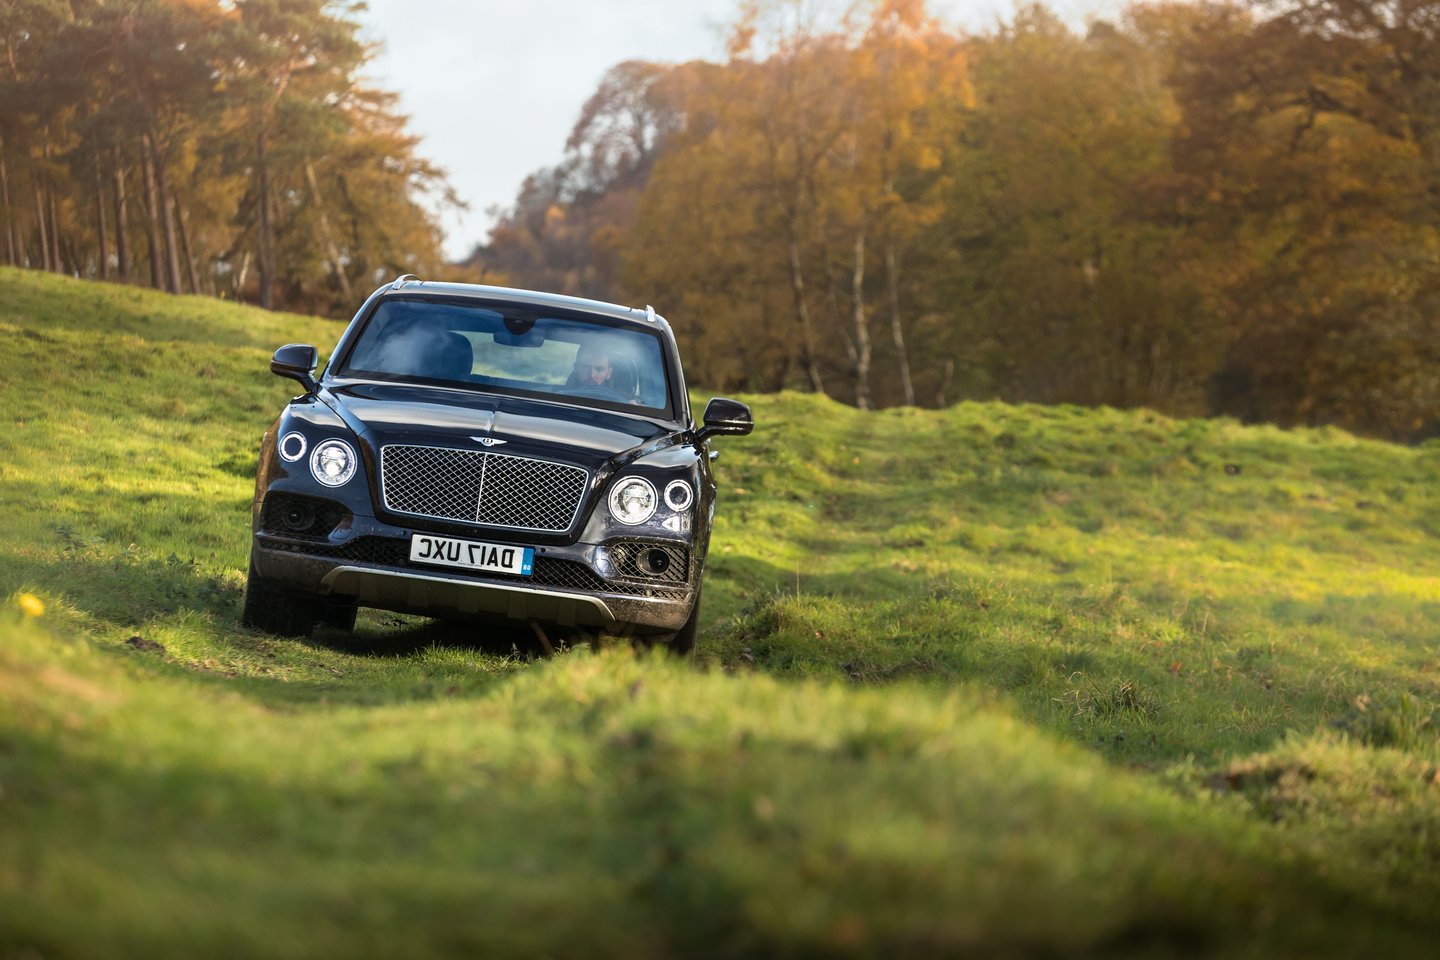  Žaidėjai ir svečiai galės iš arčiau susipažinti su „Bentley Bentayga“ ir „Continental GT“ modeliais. <br> Gamintojo nuotr.